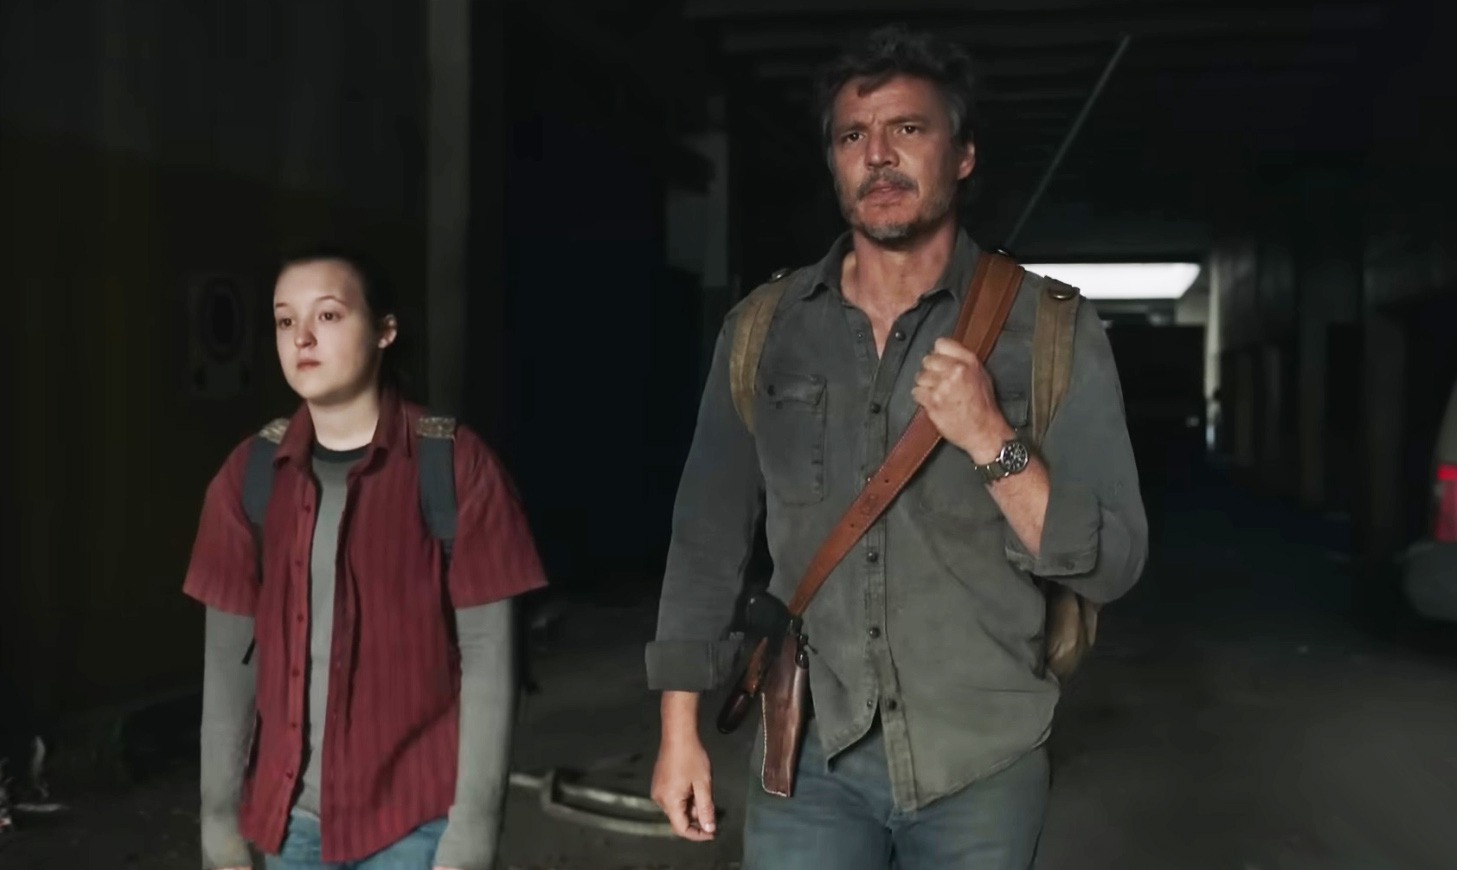 É hoje! Série de The Last of Us estreia às 23h na HBO; saiba tudo